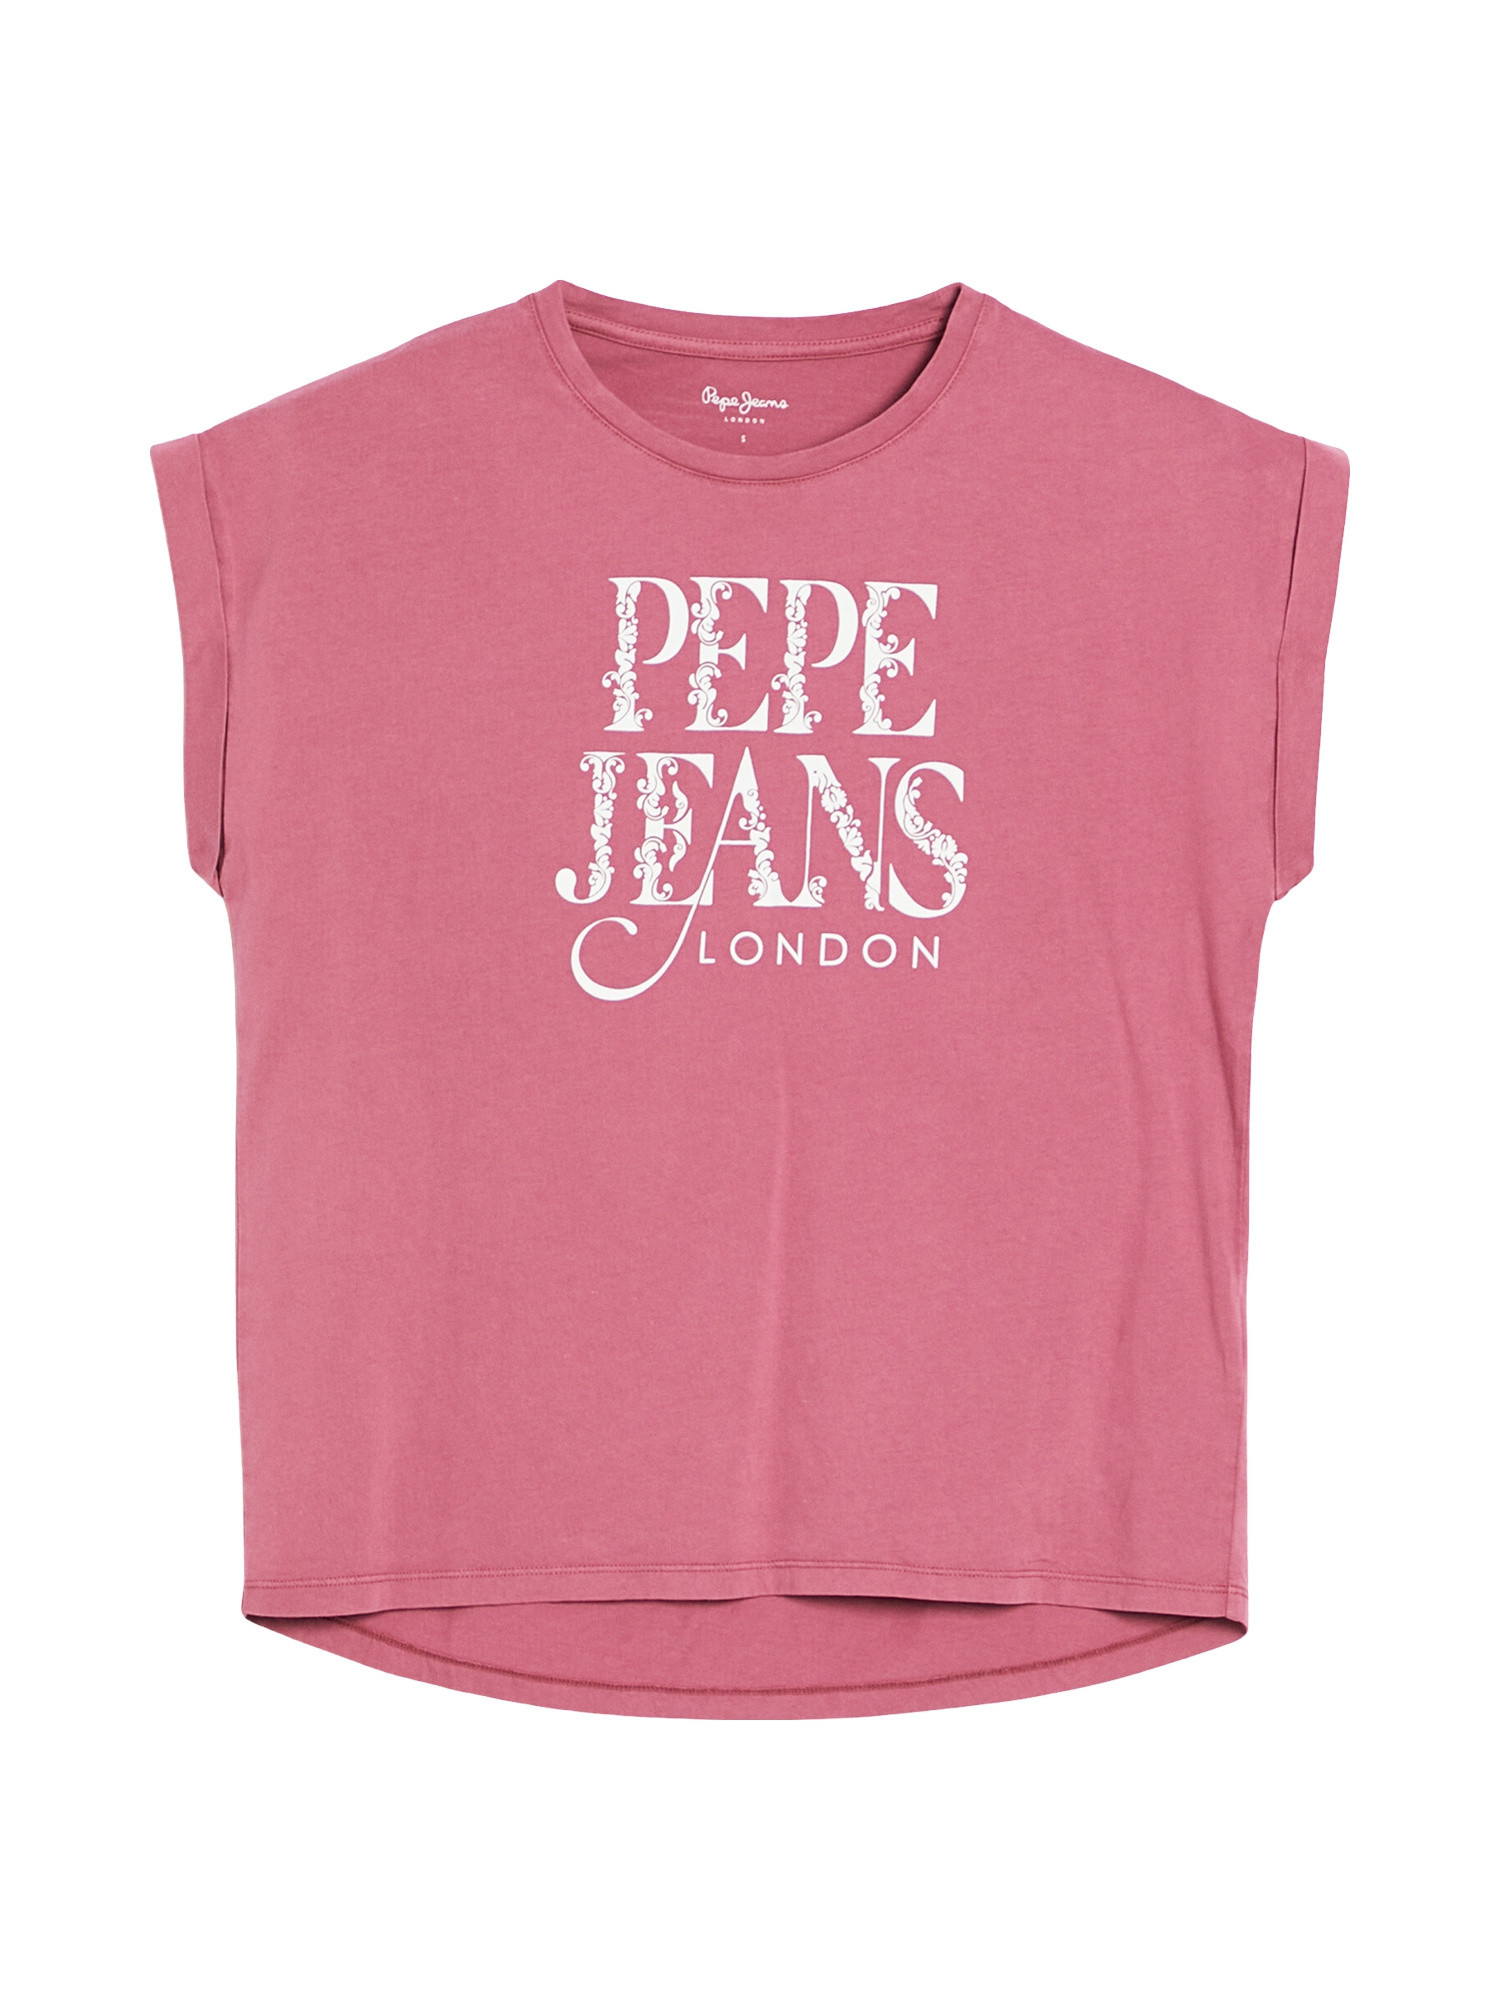 Pepe Jeans - Cotton logo T-shirt, Dark Pink, large image number 0